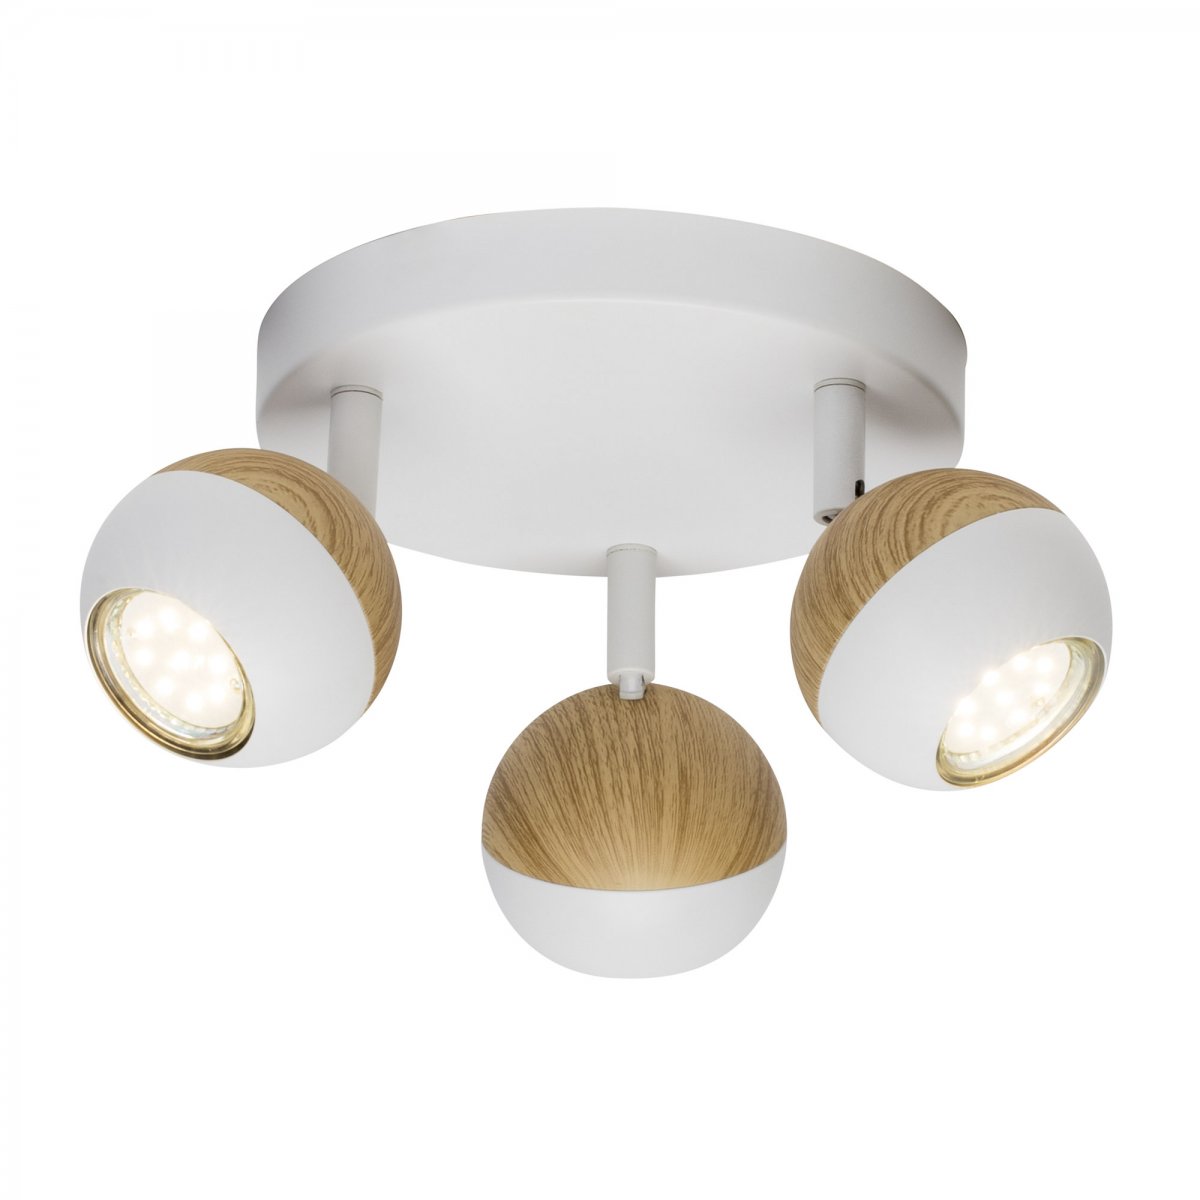 Brilliant Leuchten No. Lampen weiß 3W GU10 holz kaufen --> Leuchten Scan & LED 3-flammig Spotrondell G59434-75 online